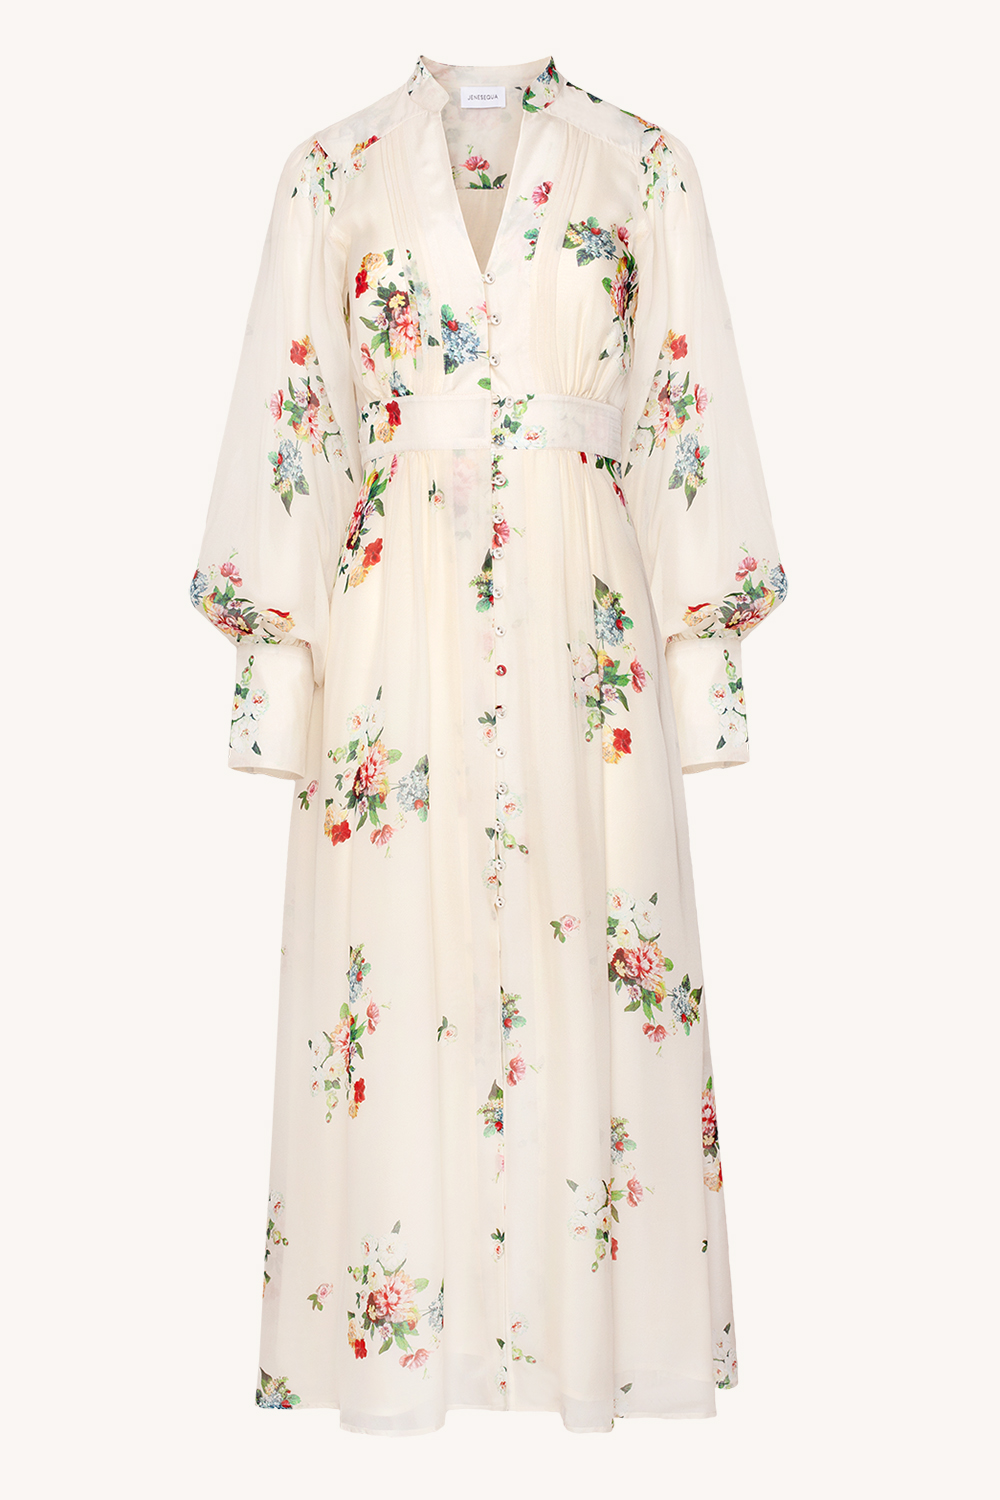 Jedwabna sukienka Annecy Flowers Cream